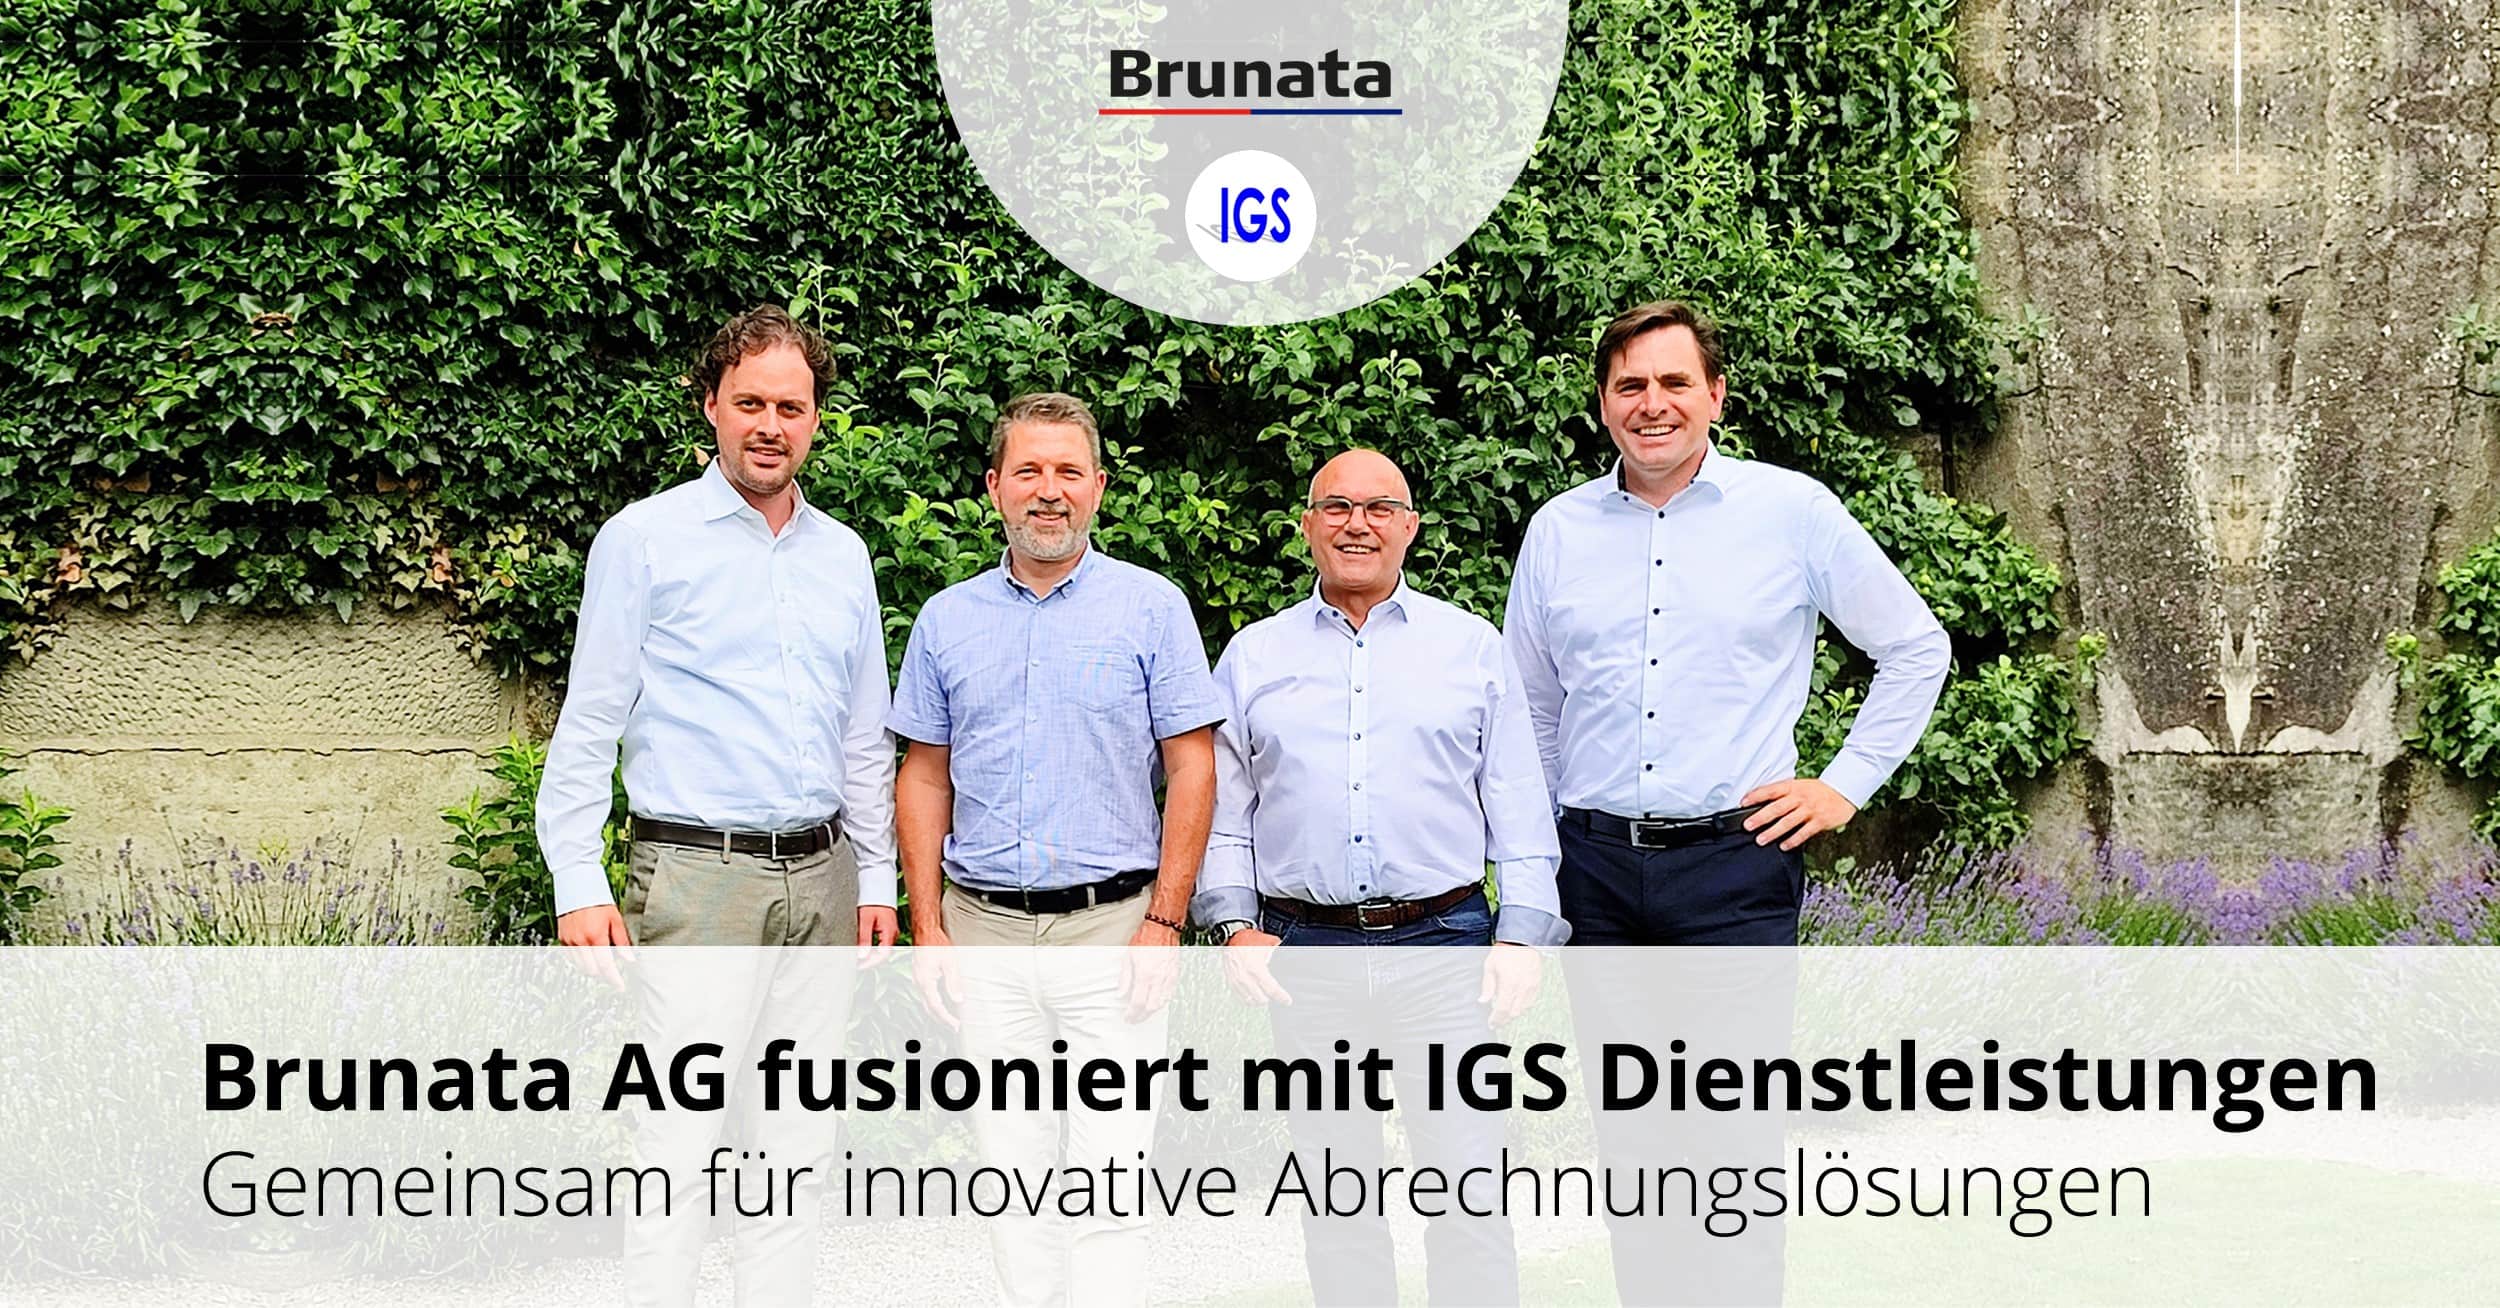 Brunata AG fusioniert mit IGS Dienstleistungen AG